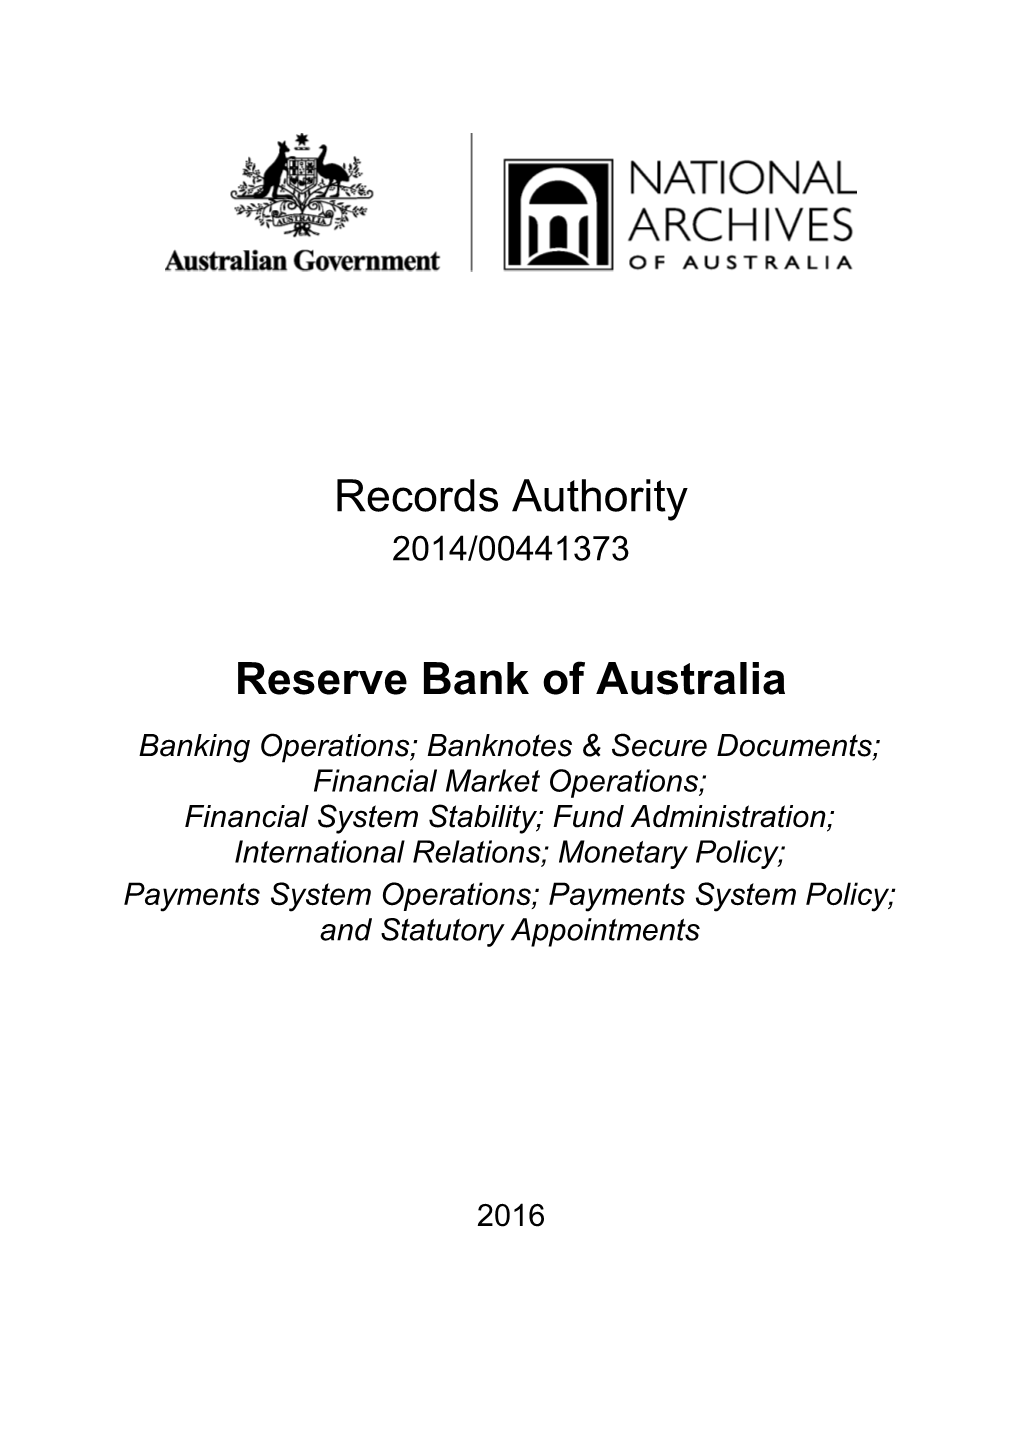 Reserve Bank of Australia (RBA) - Records Authority - 2014 00441373